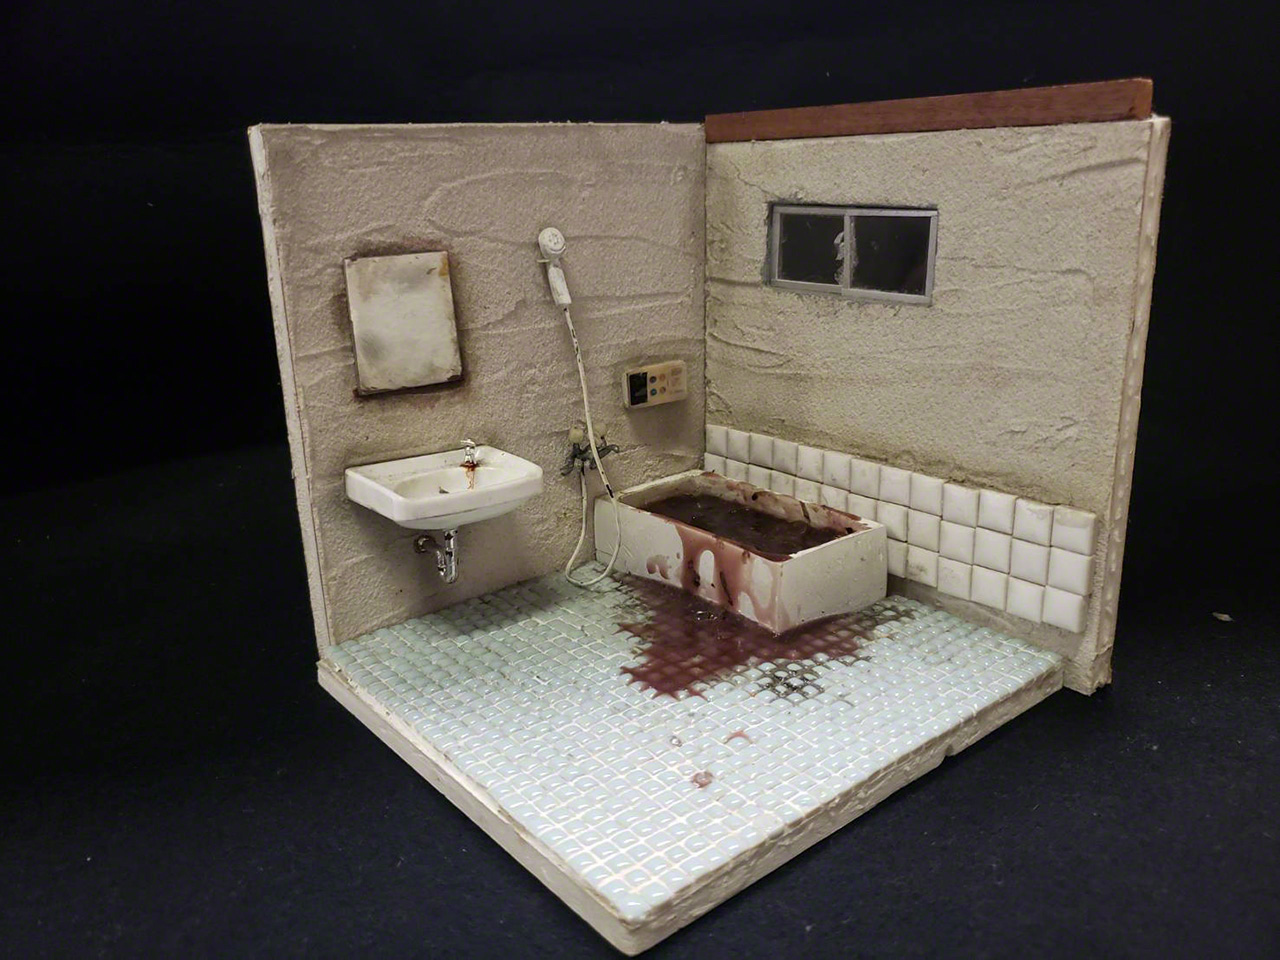 Le diorama « Kodokushi, provoqué par un choc thermique » représente la baignoire dans laquelle la victime a été trouvée.